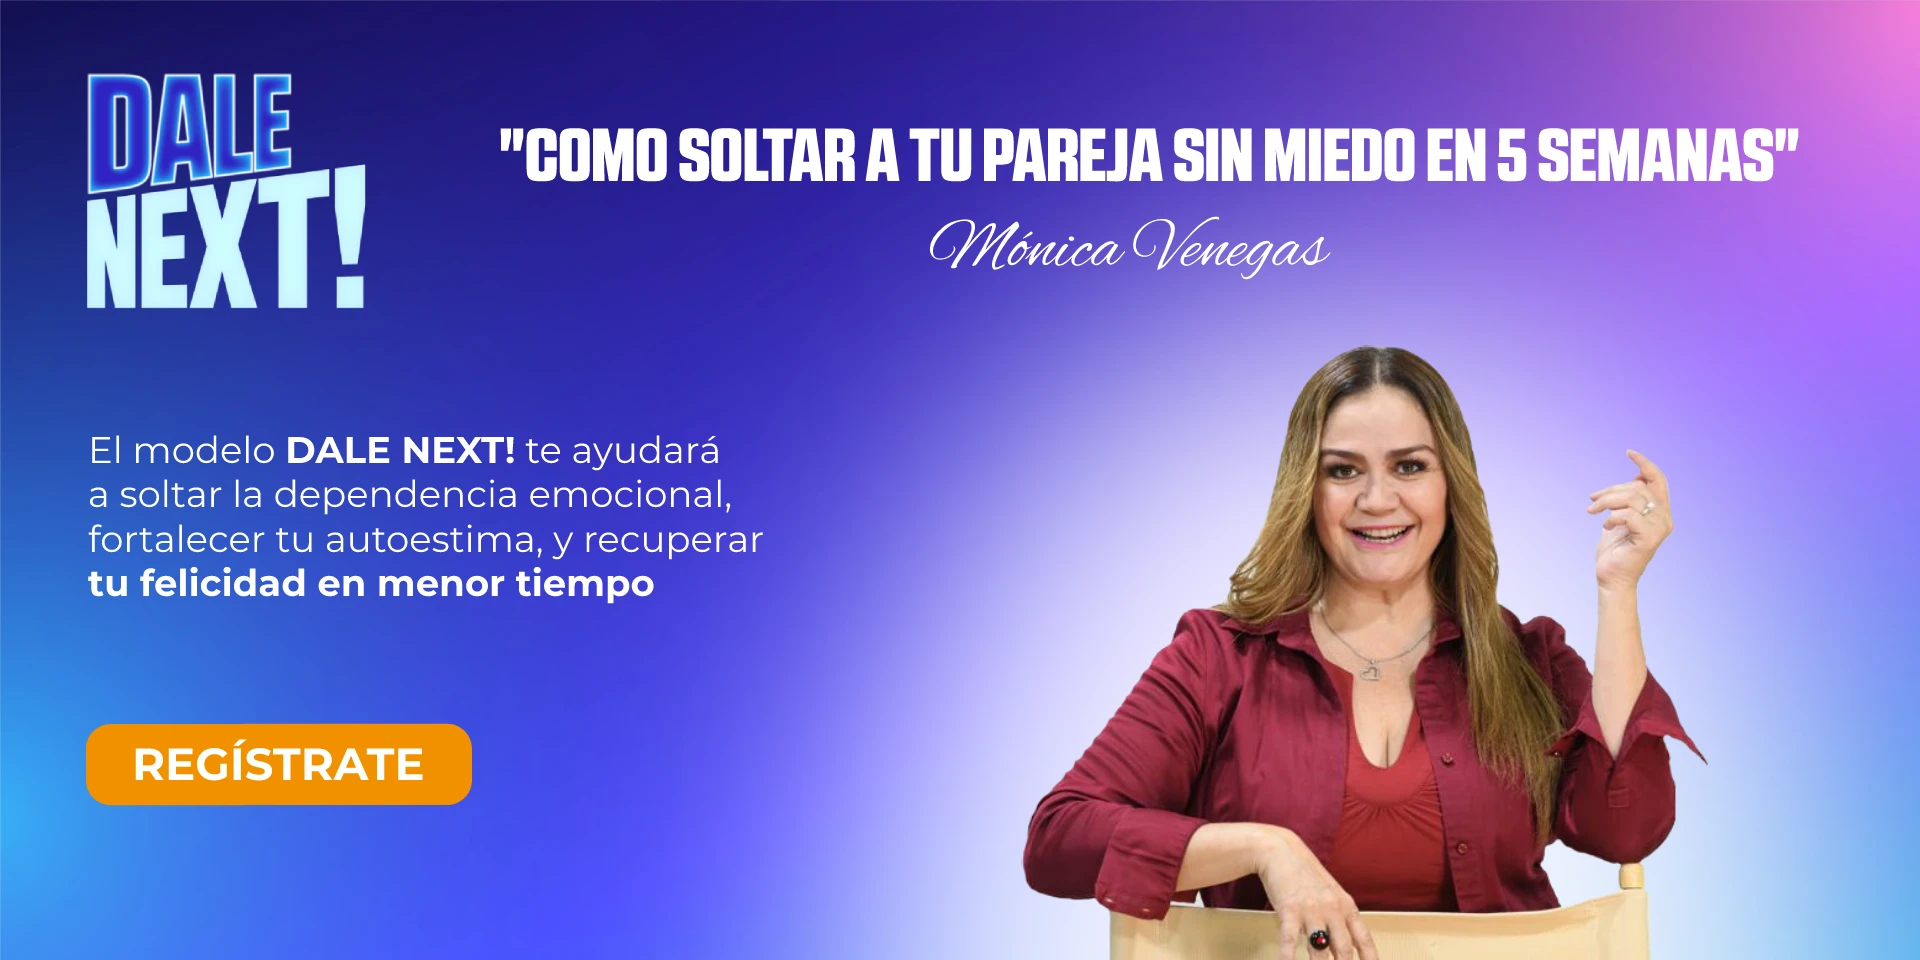 Mónica Venegas